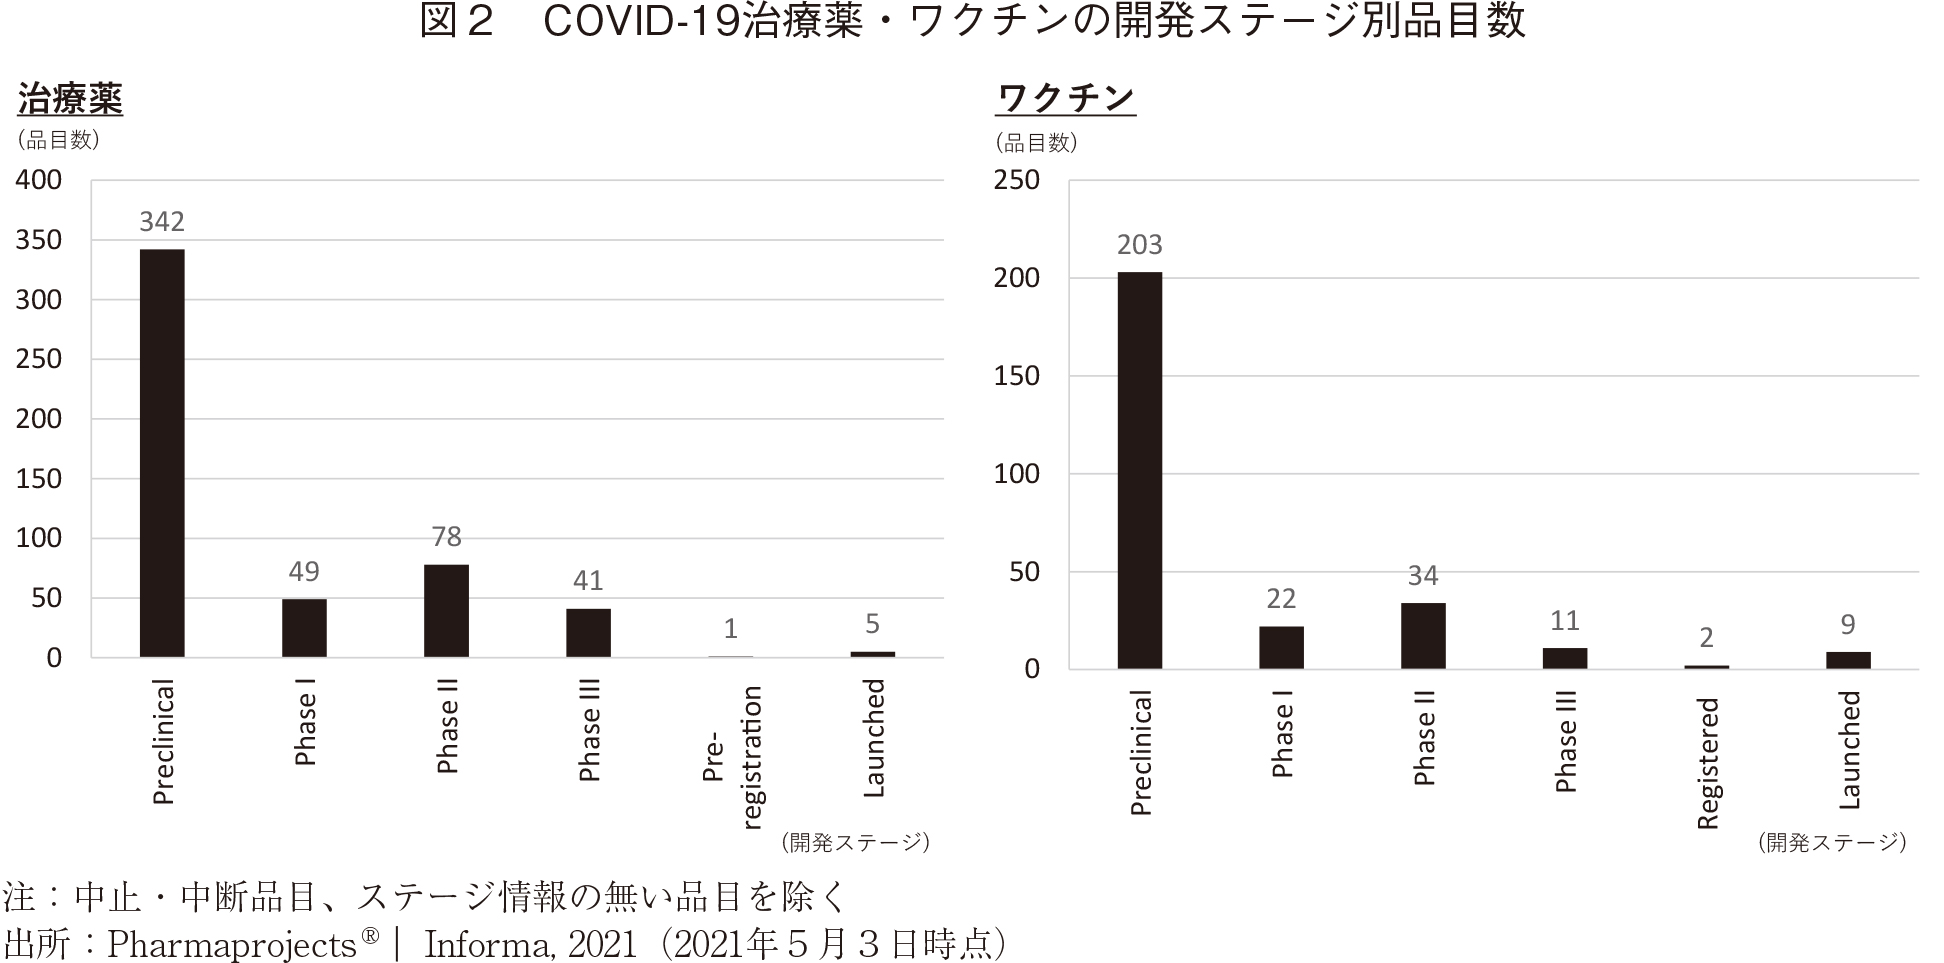 図2 COVID-19治療薬・ワクチンの開発ステージ別品目数